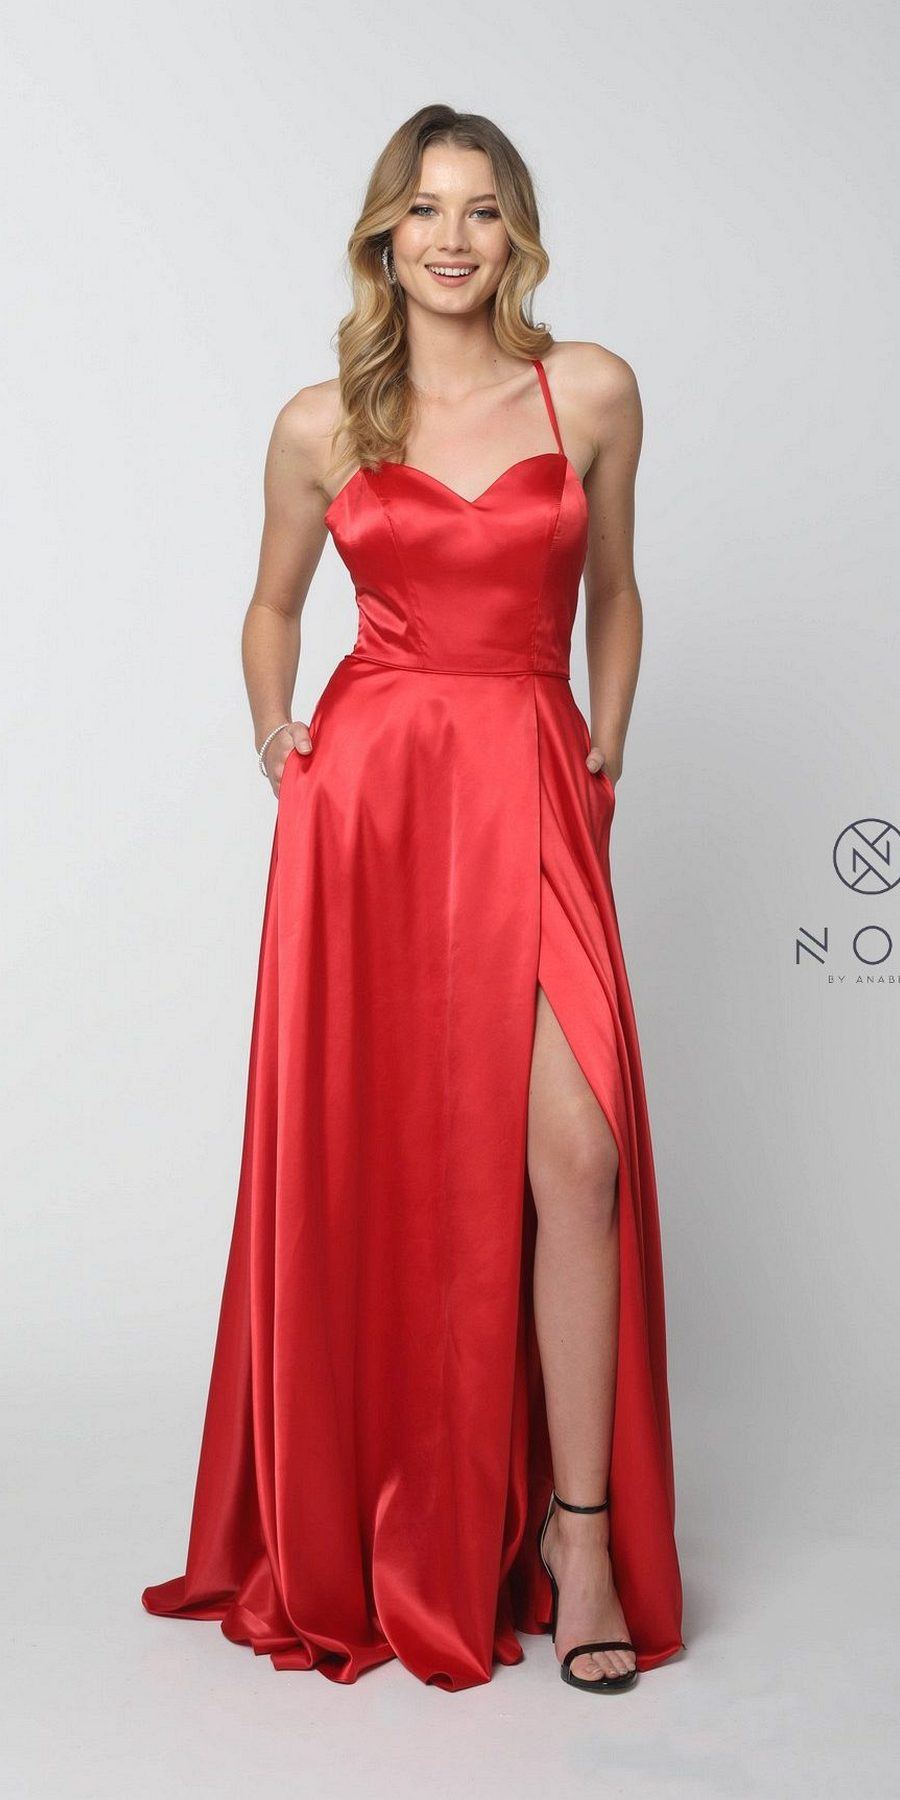 long red corset dress